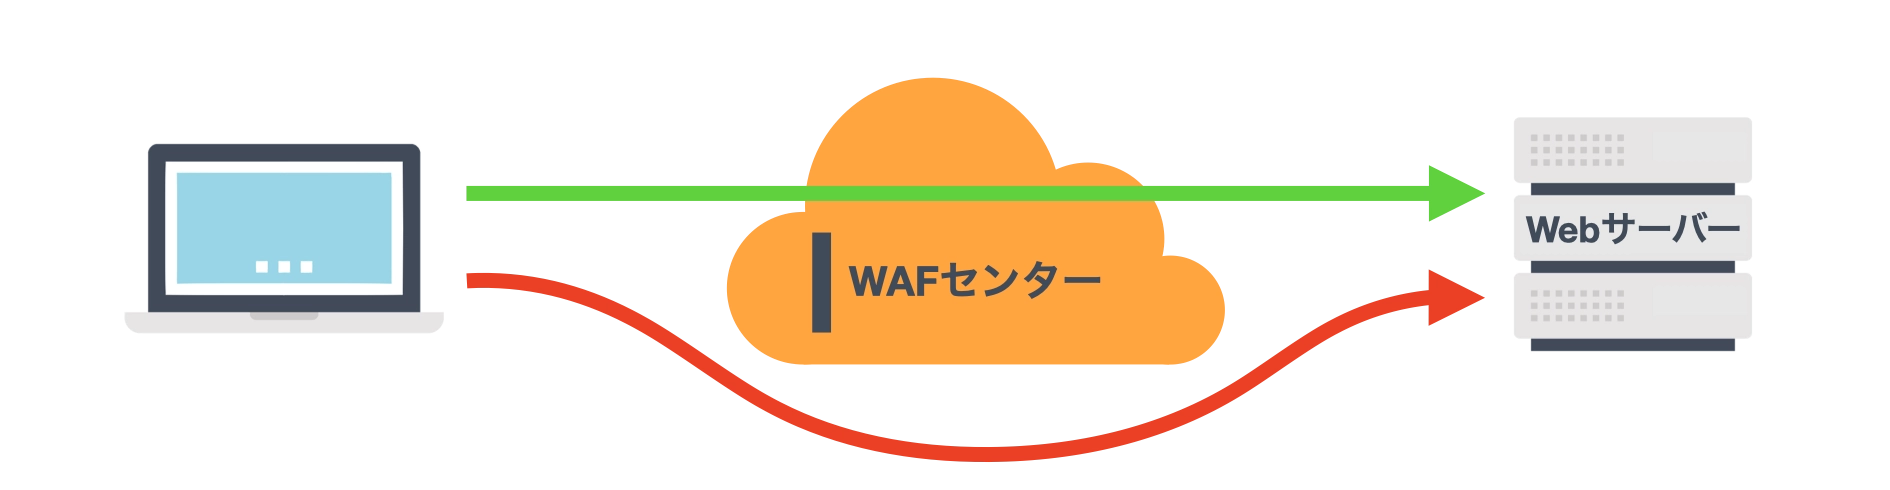 cloud-waf_bypass